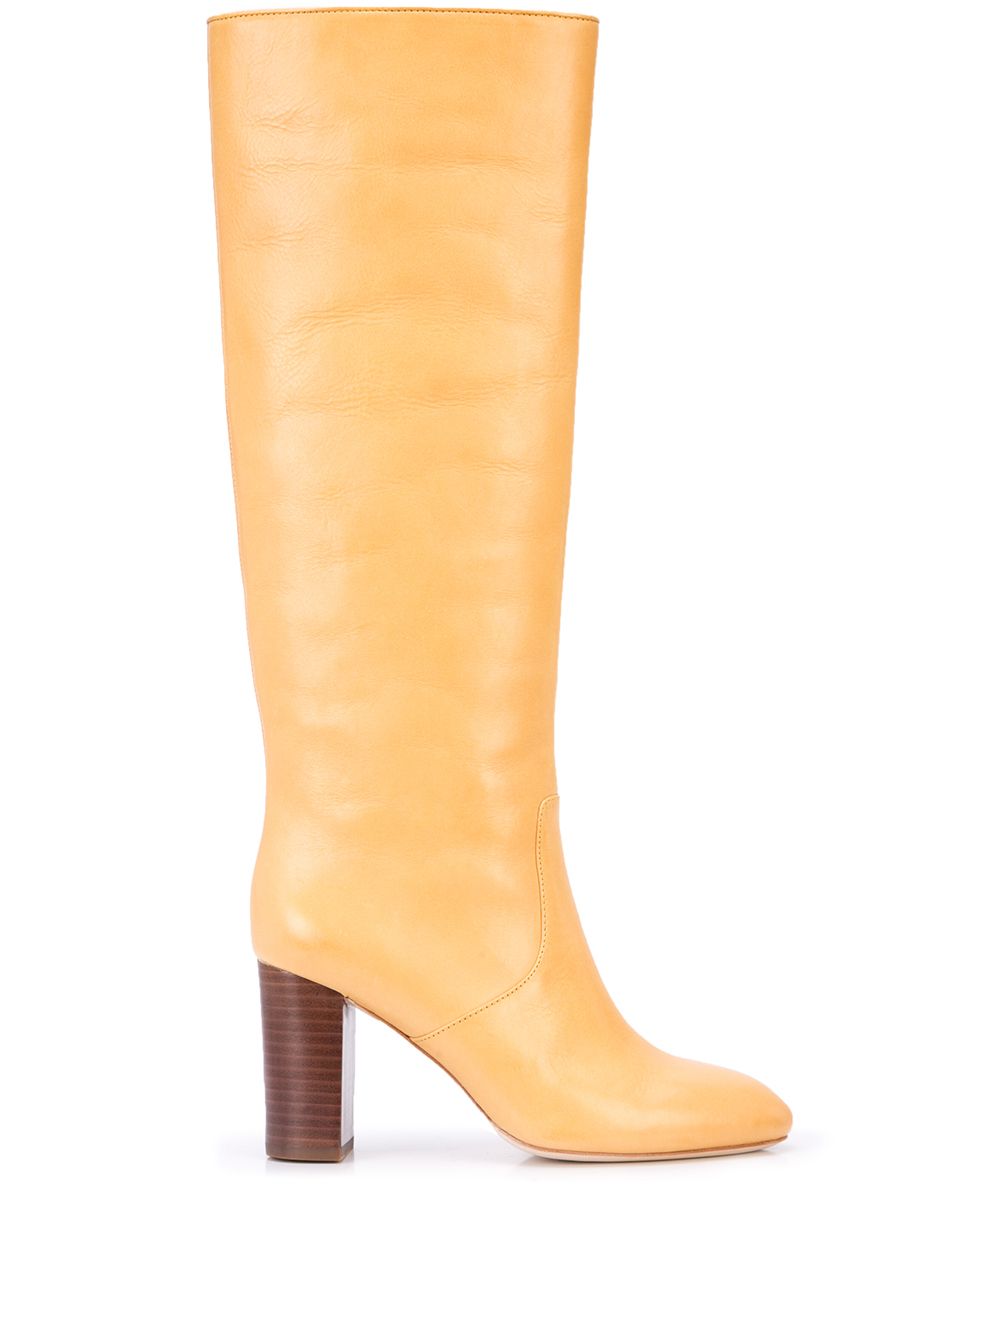 loeffler randall goldy tall boots